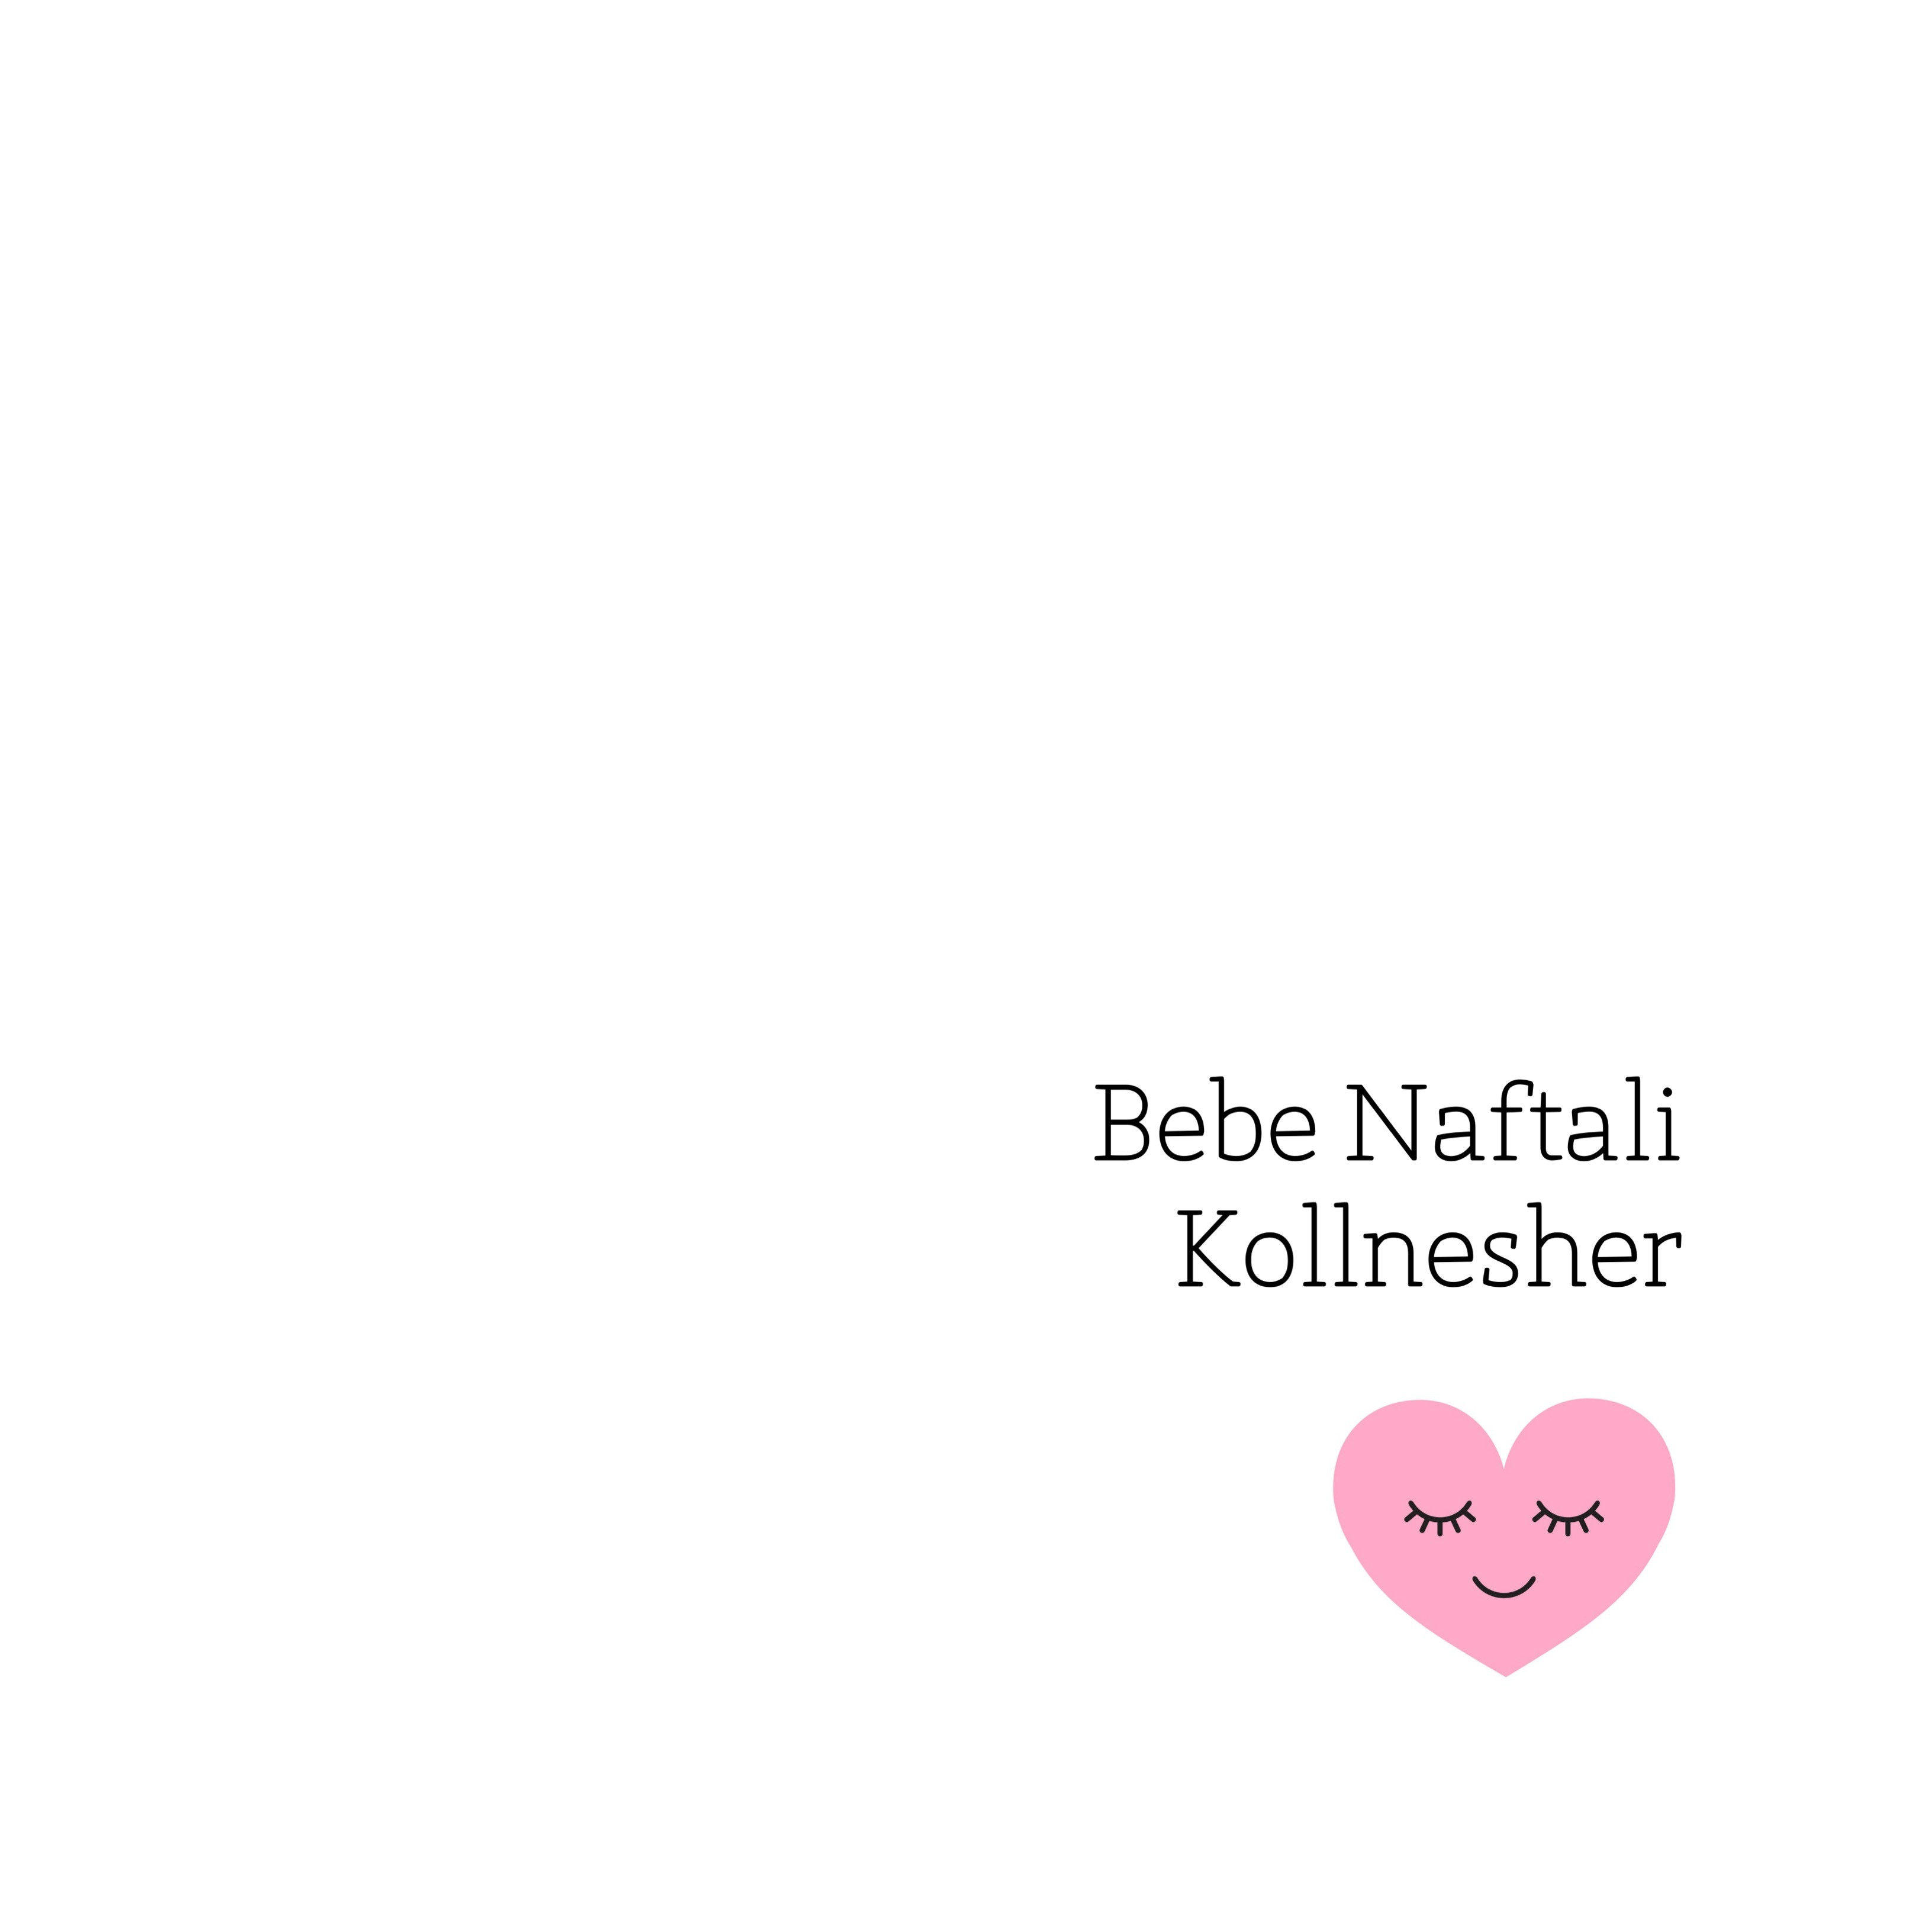 Baby Naftali Kollnesher